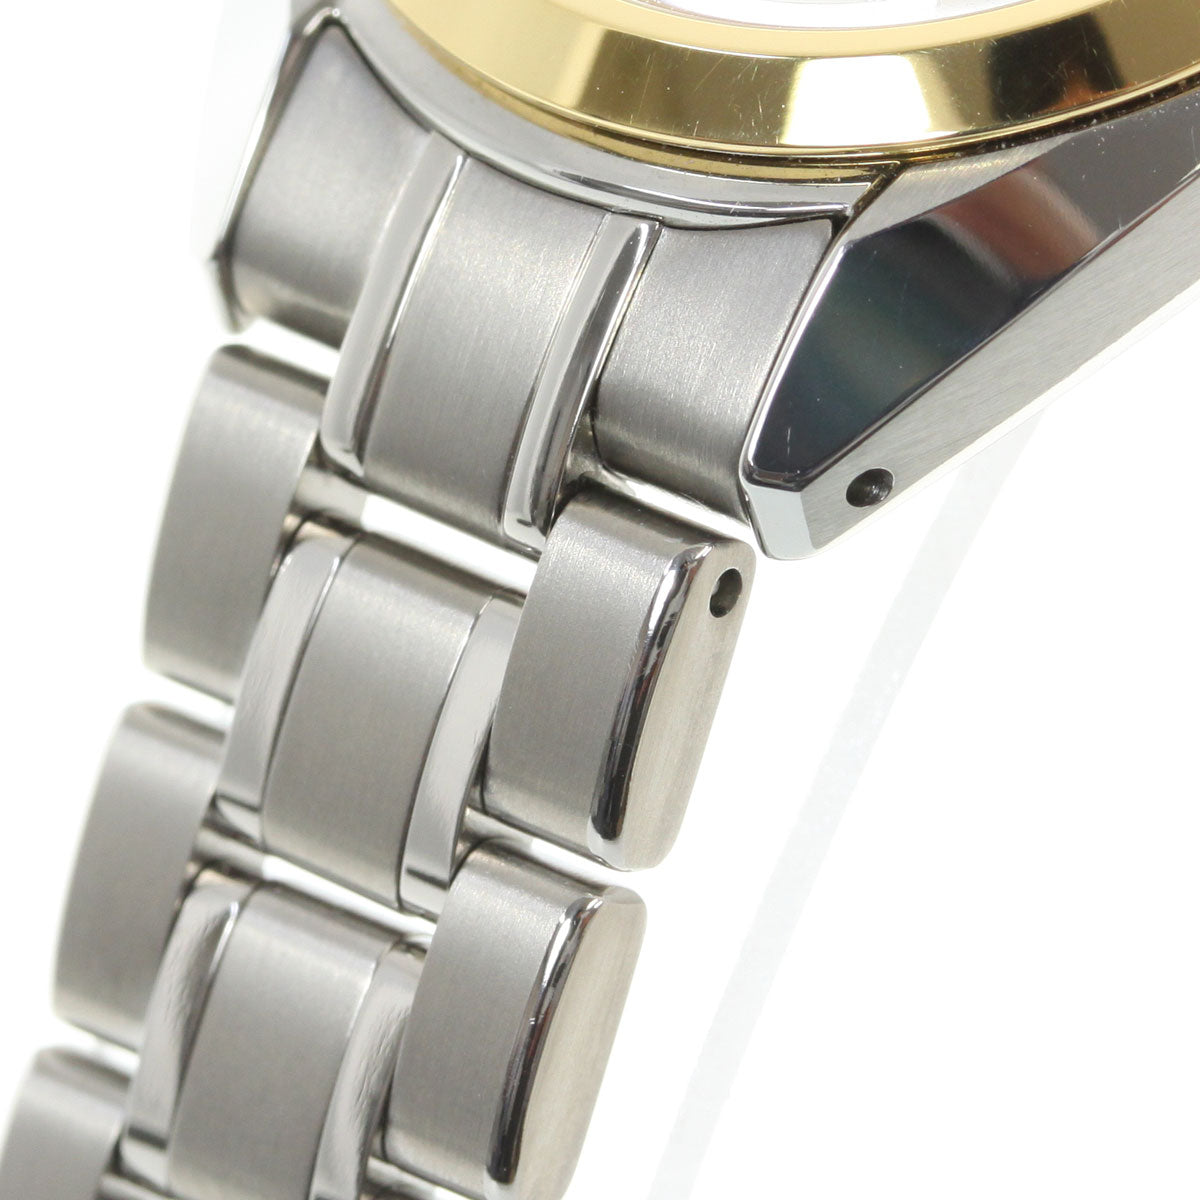 グランドセイコー GRAND SEIKO 腕時計 レディース STGF334【正規品】【36回無金利ローン】